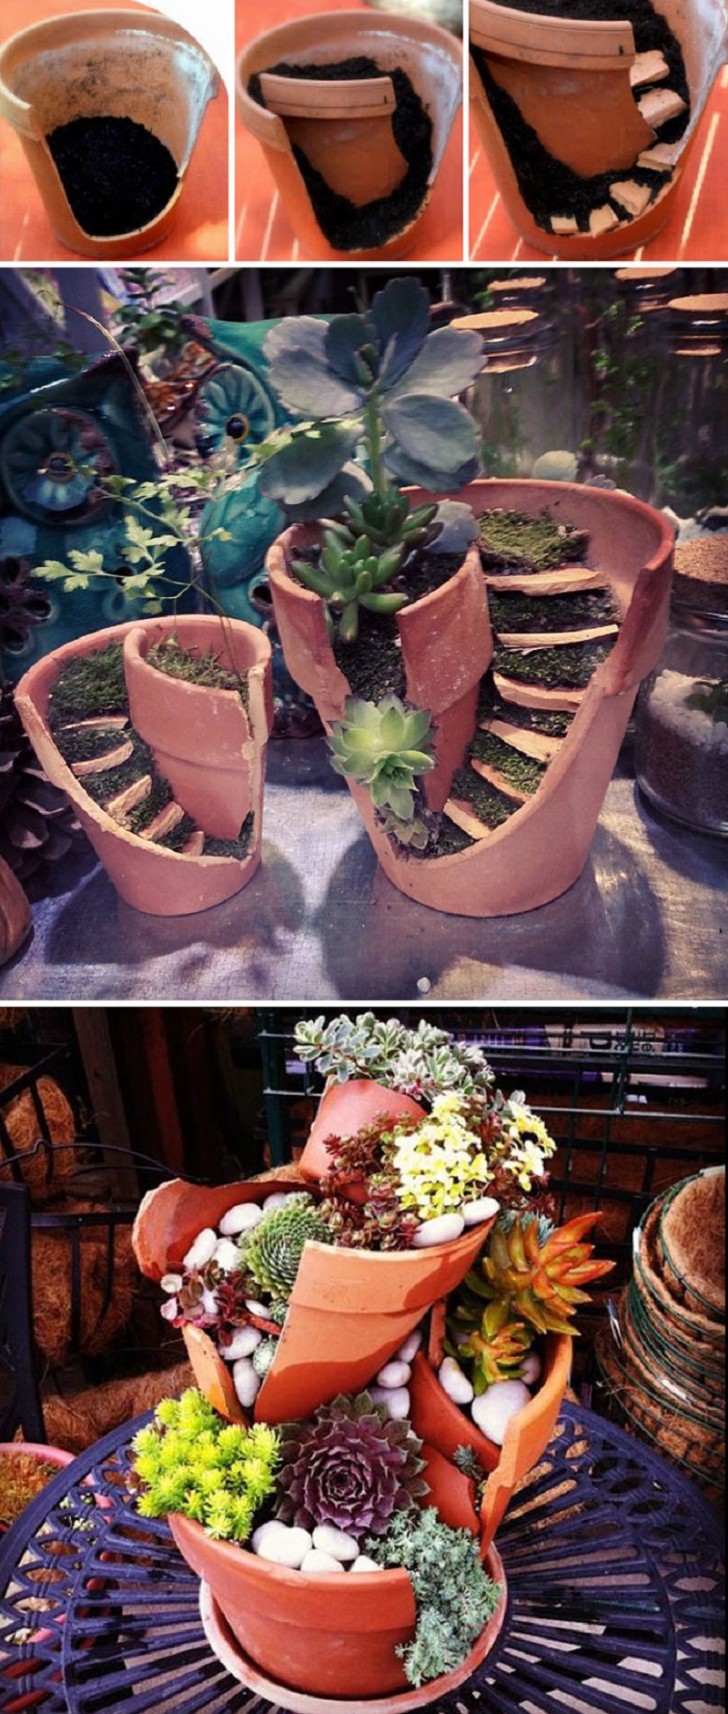 3. Un vaso rotto diventa improvvisamente un piccolo giardino a sé stante!